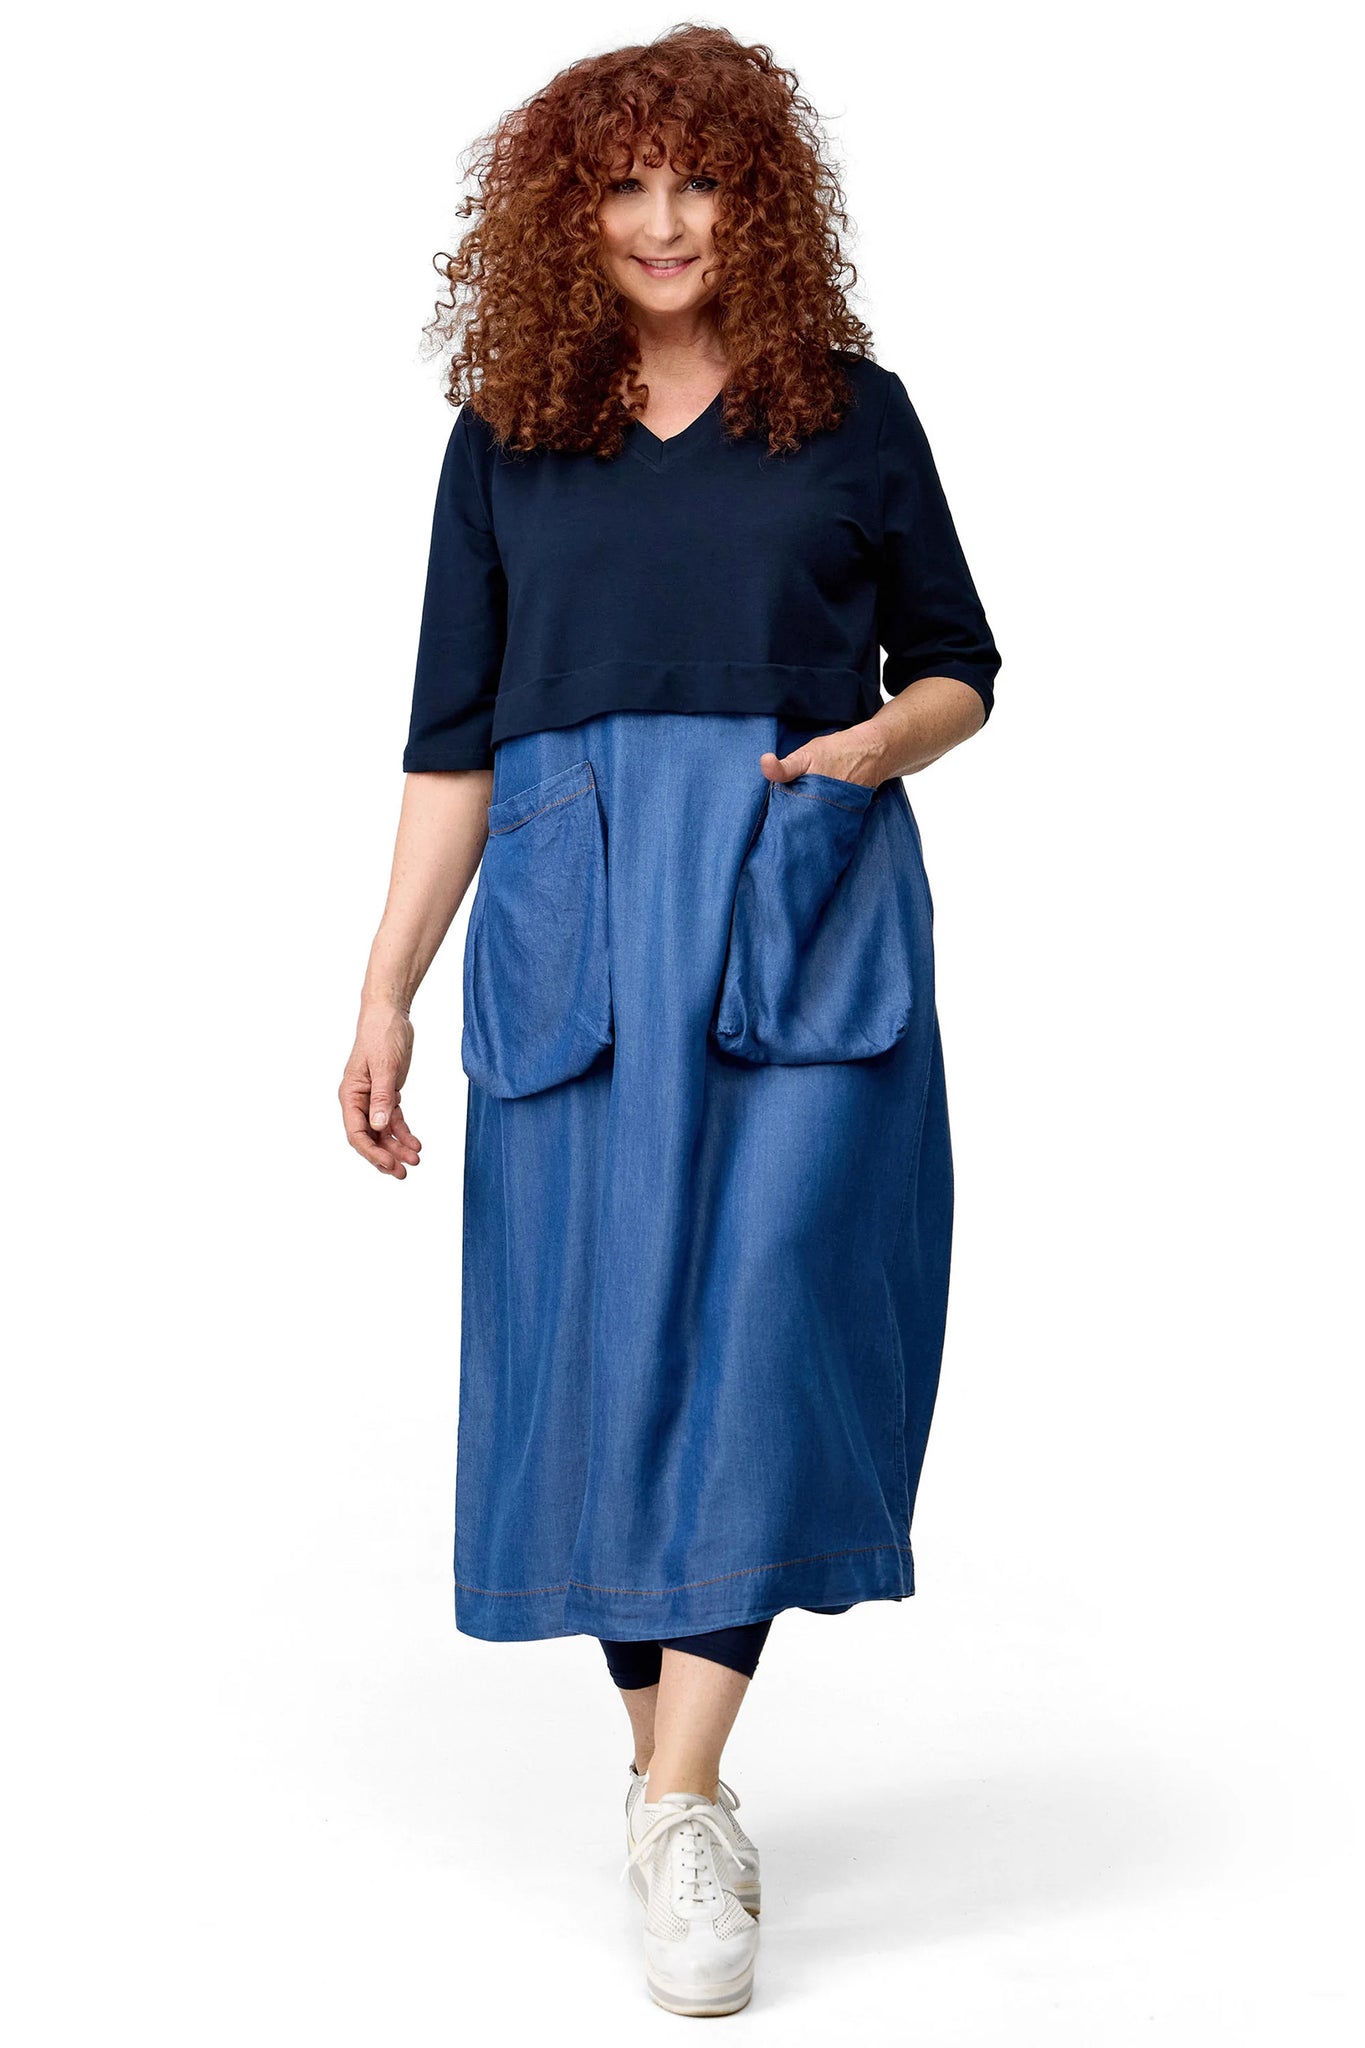 Kleid von Do Your Best aus Tencel in gerader Form, D61601, Jeansblau, Ausgefallen, Modern